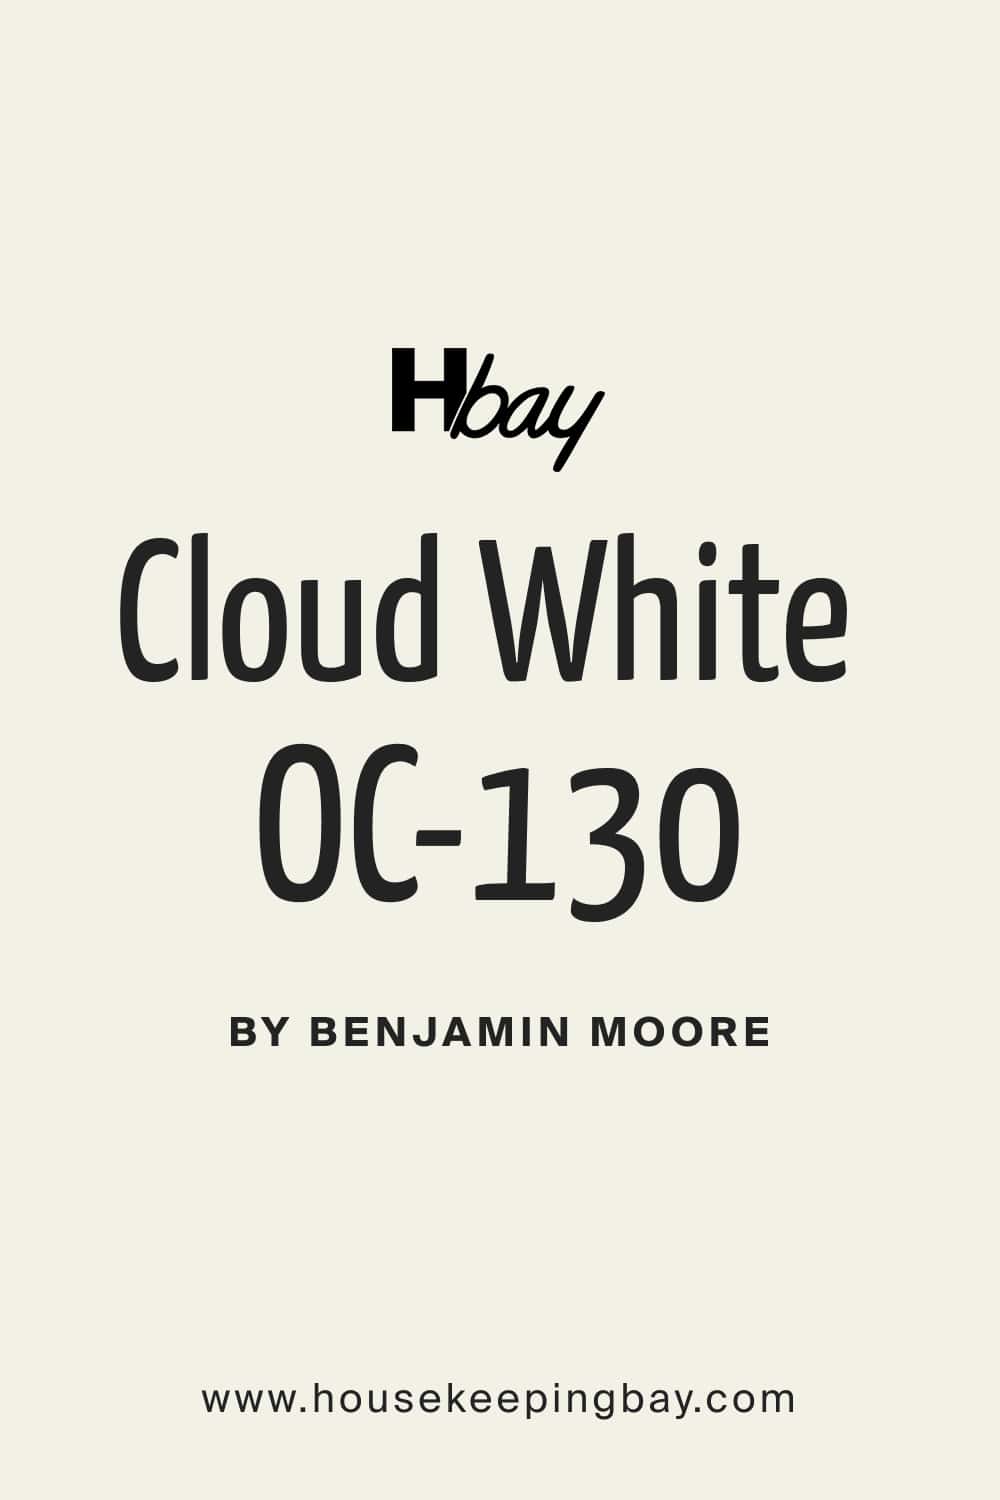 Cloud White OC 130 by Benjamin Moore